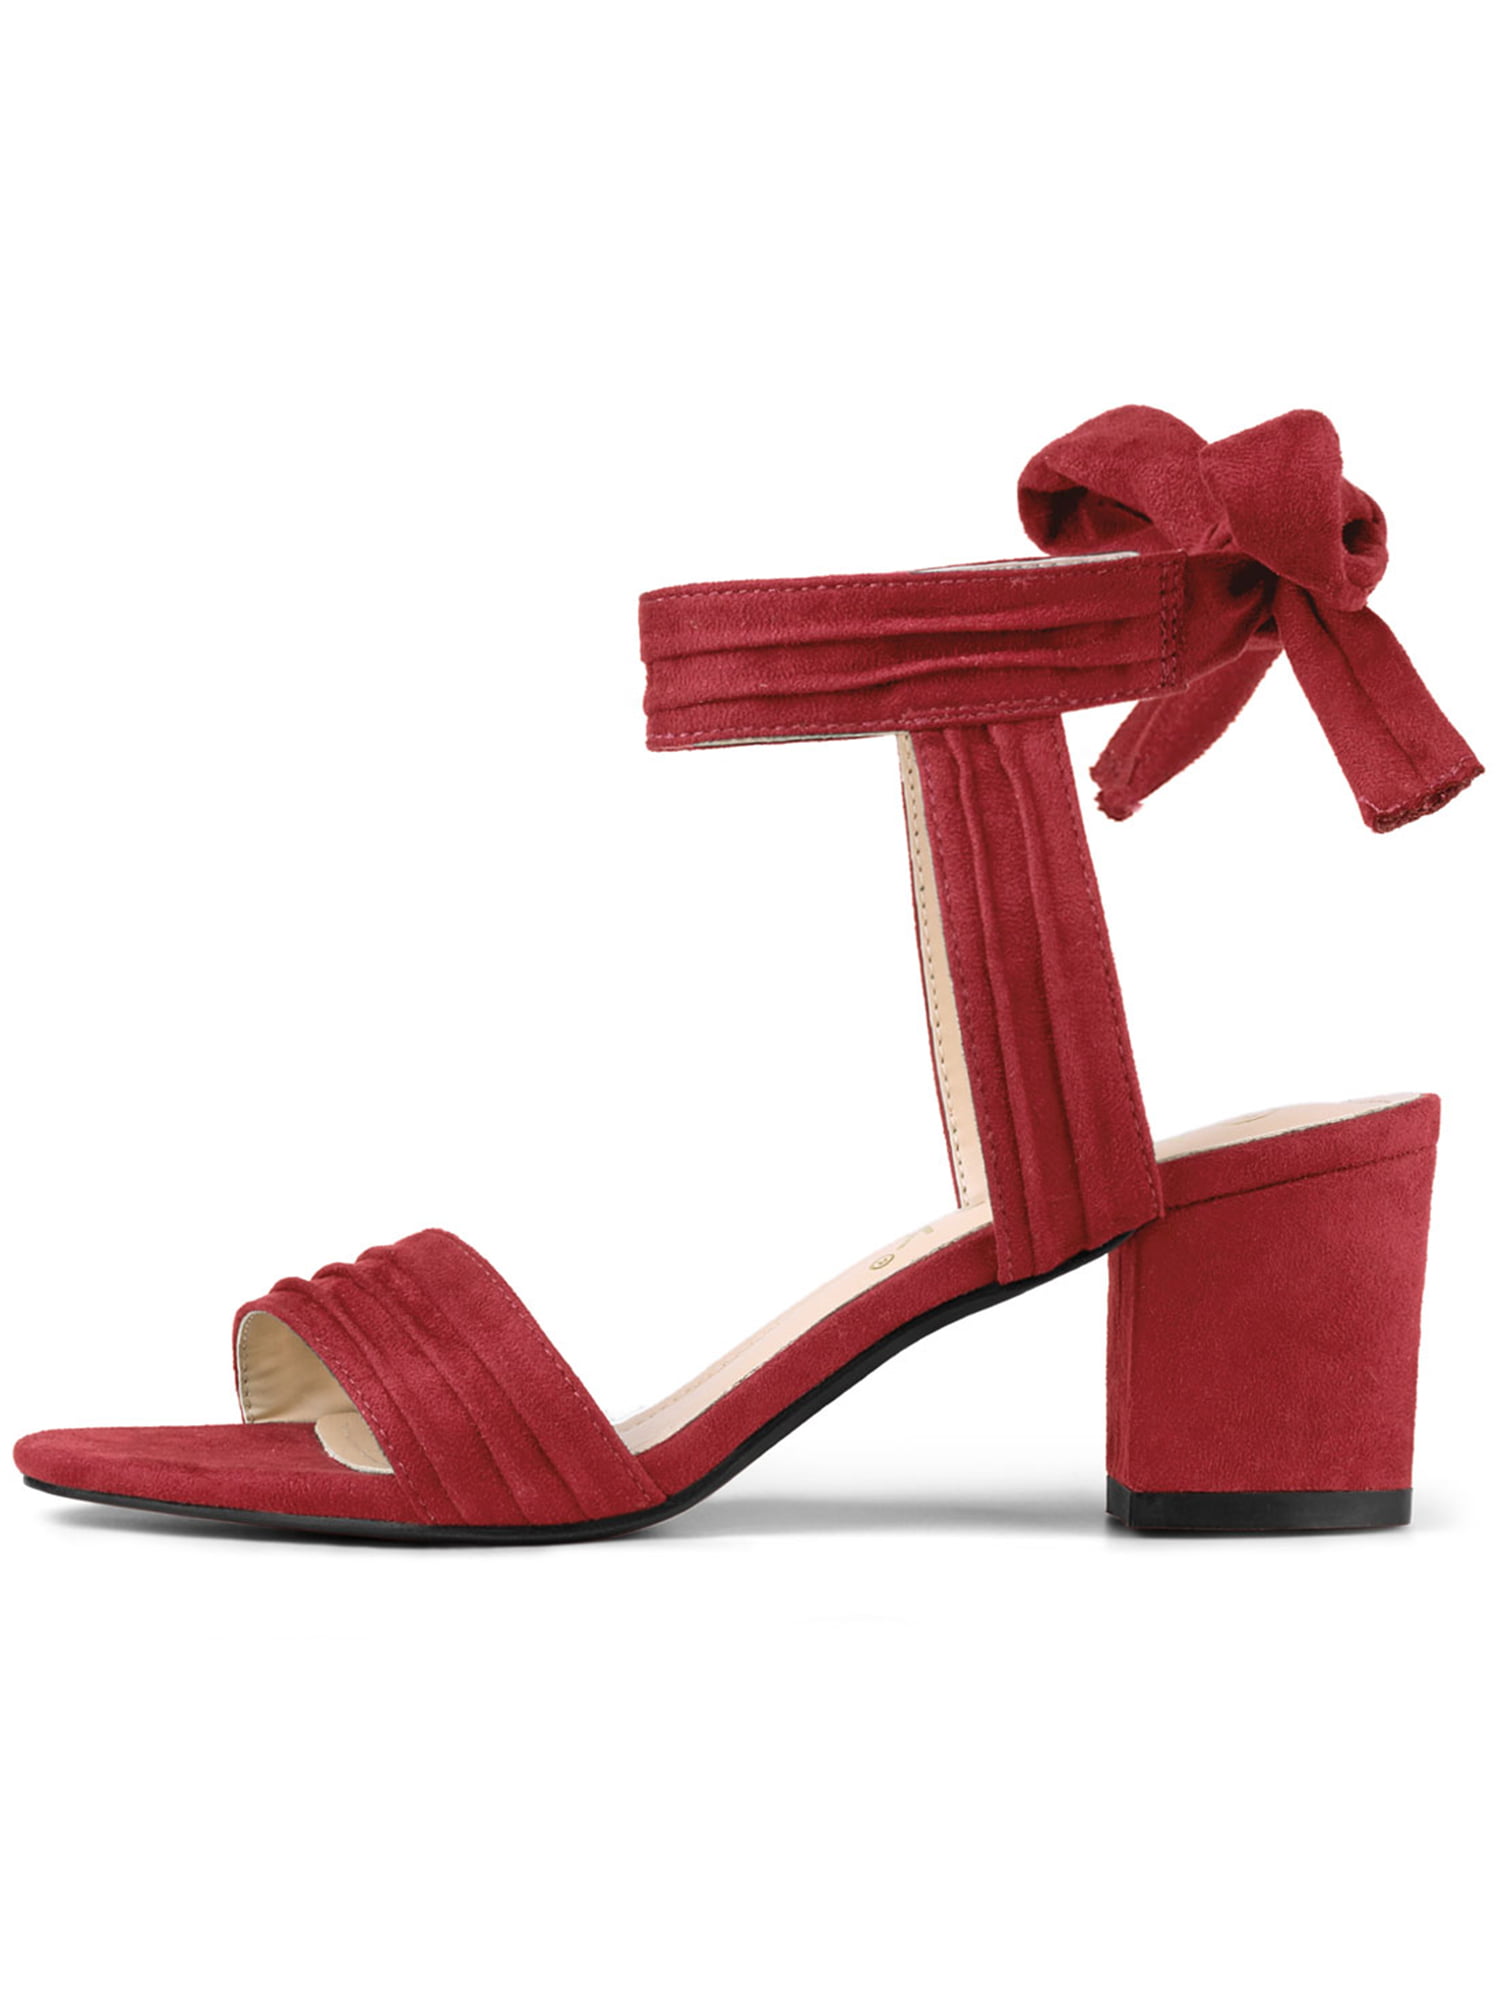 Vince Camuto Beah Block Heel Sandal In Dark Red Snake Print Size 8 Medium | Block  heels sandal, Sandals heels, Simple sandals